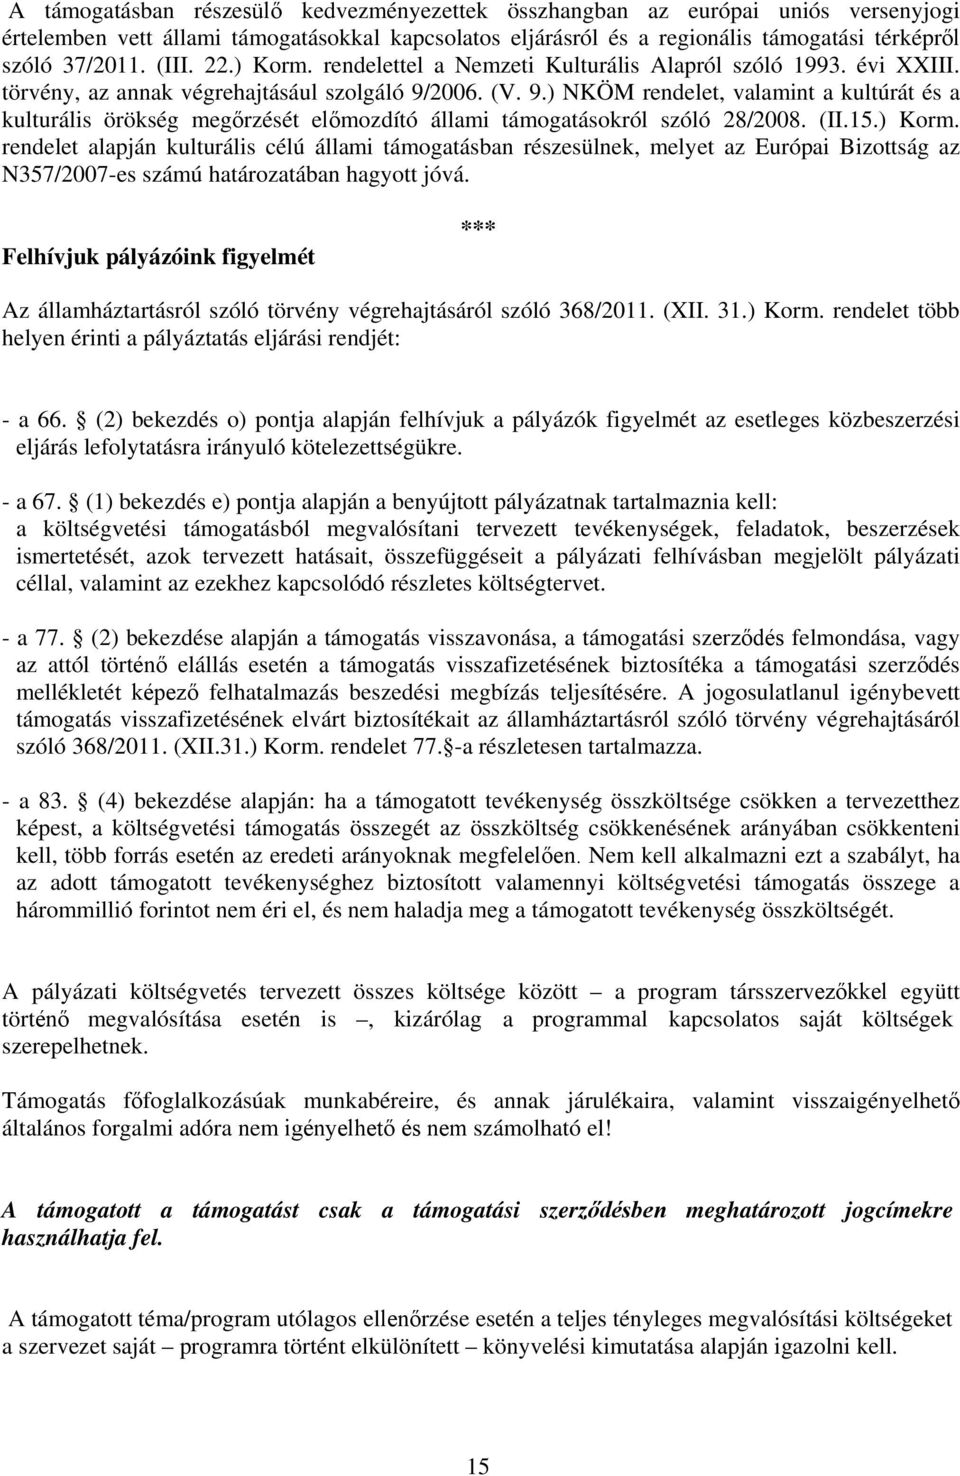 2006. (V. 9.) NKÖM rendelet, valamint a kultúrát és a kulturális örökség megőrzését előmozdító állami támogatásokról szóló 28/2008. (II.15.) Korm.